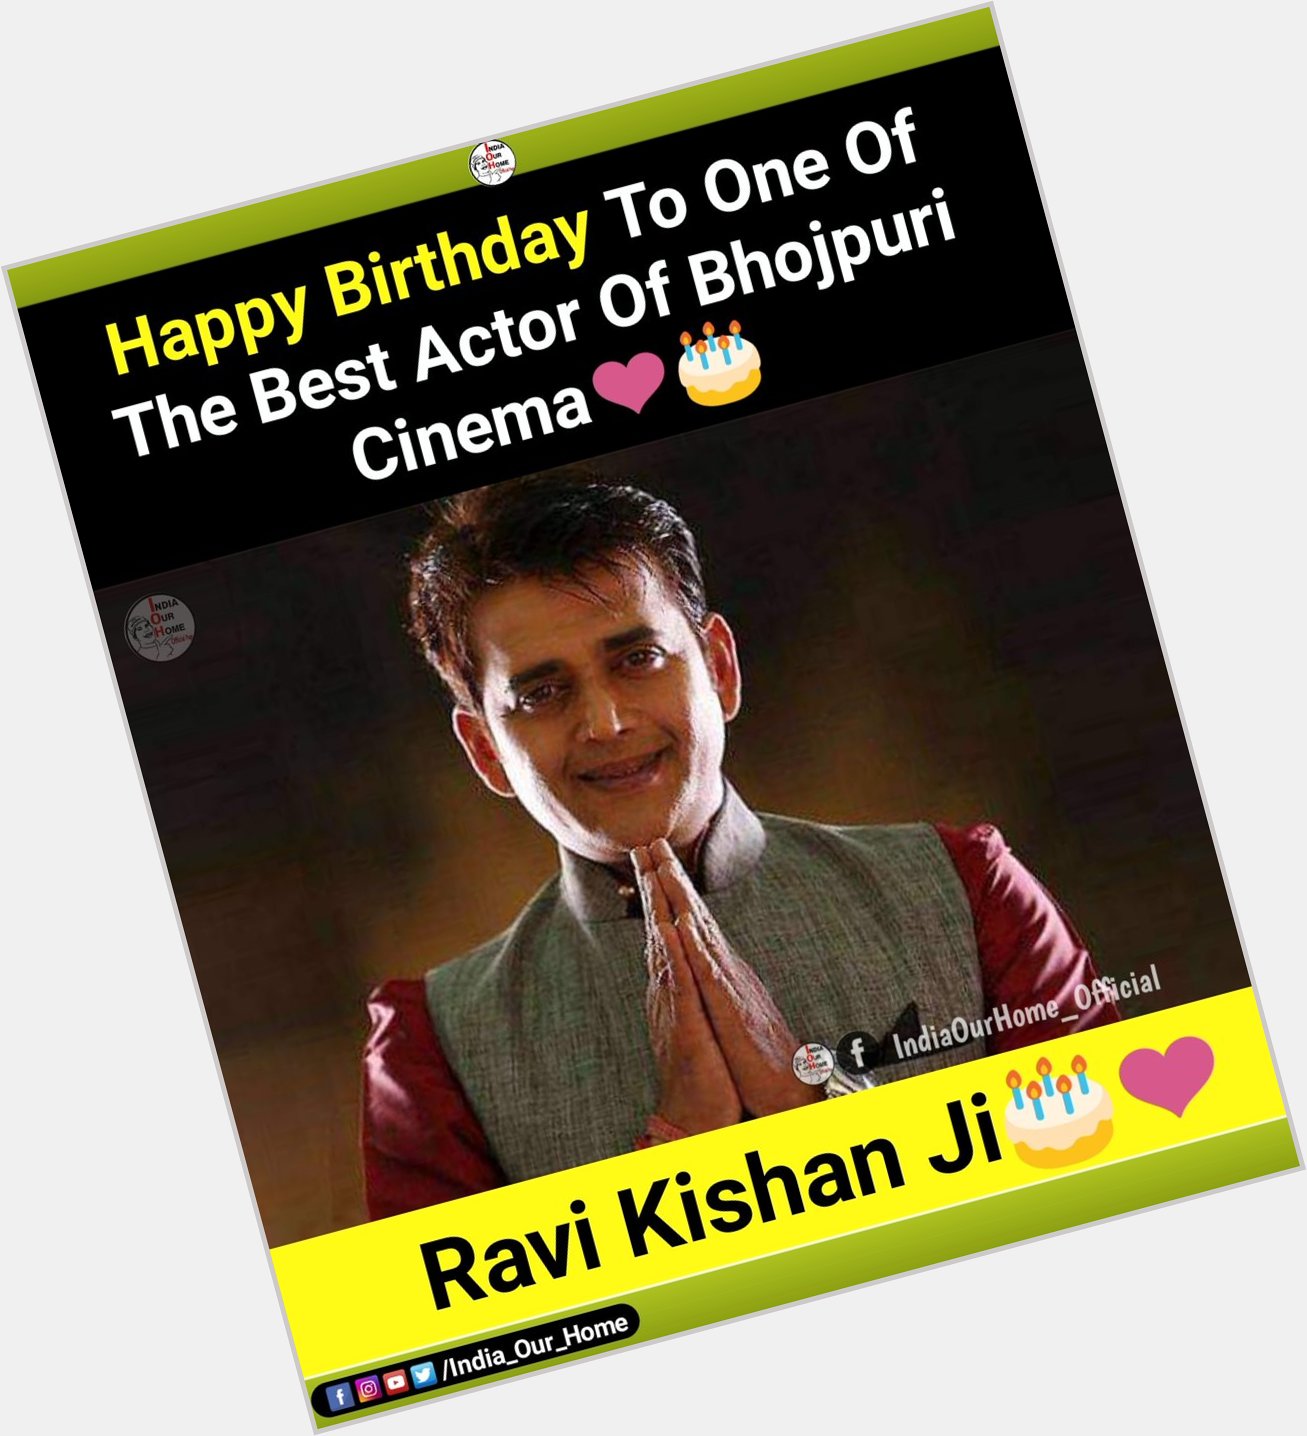 Happy birthday Ravi Kishan Ji 